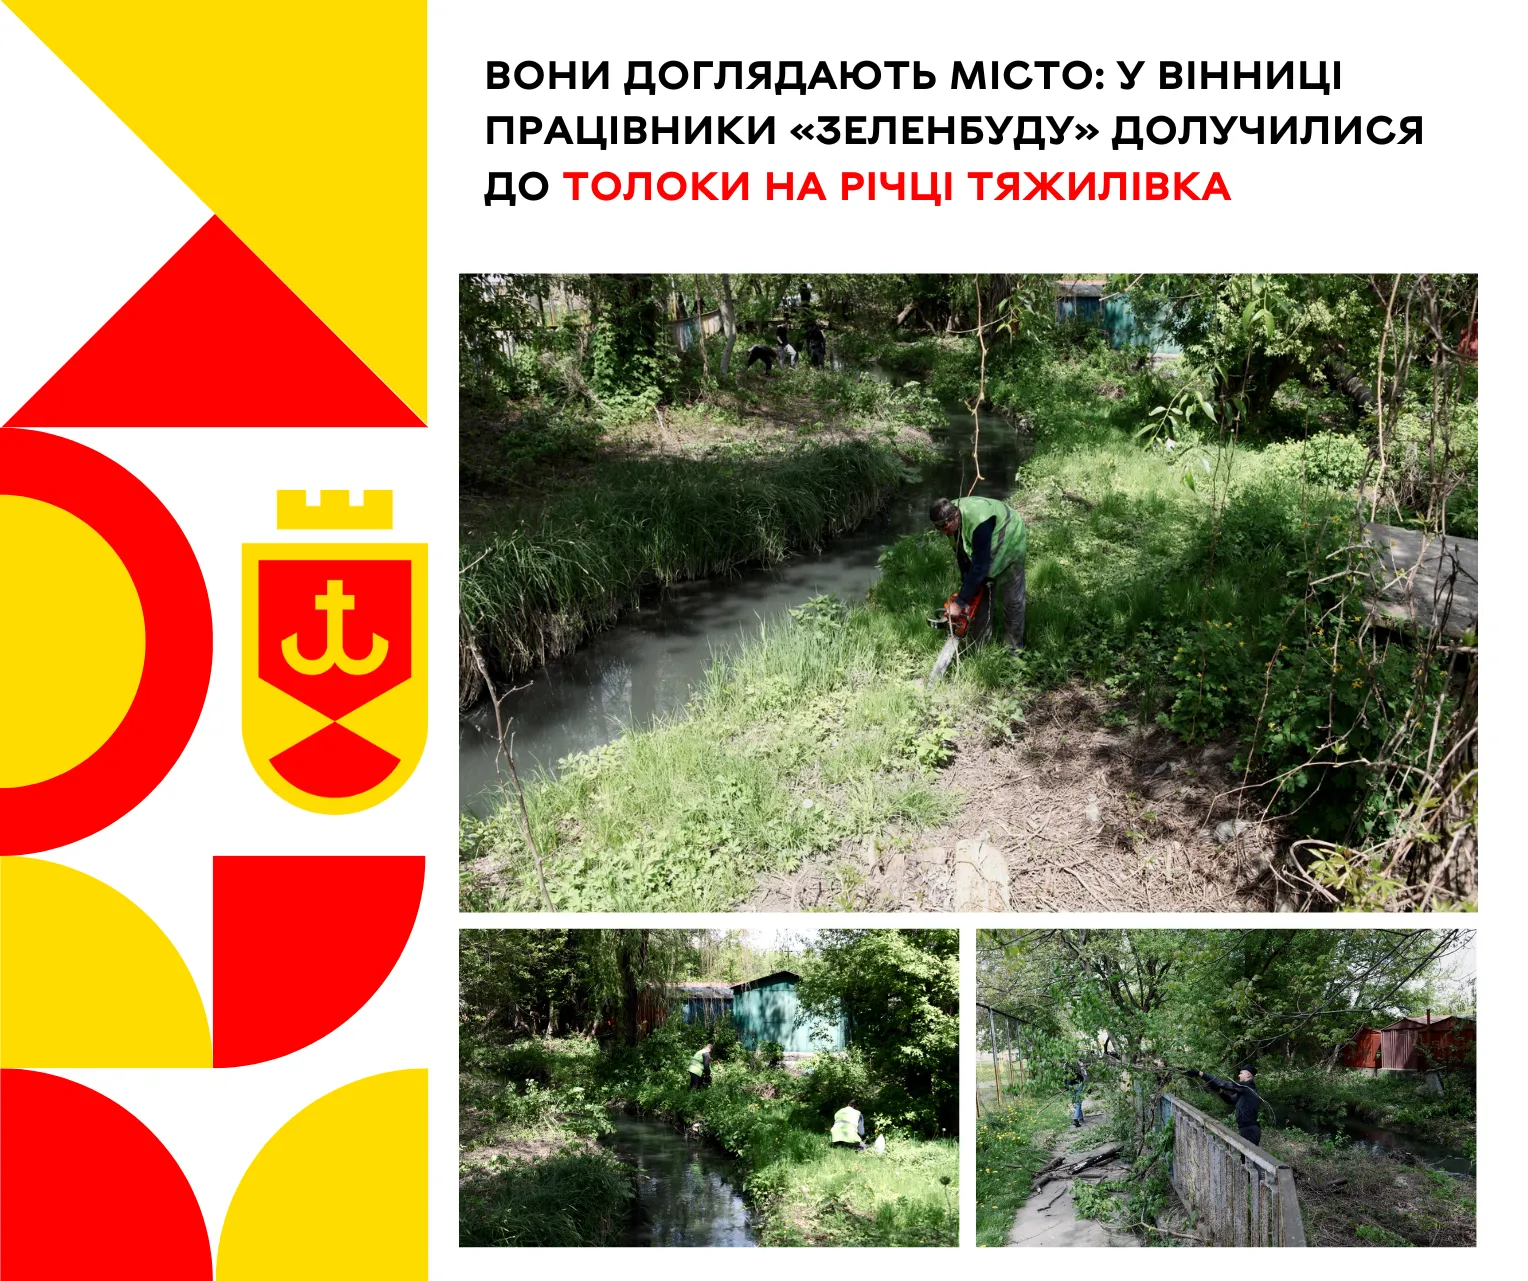 У Вінниці працівники «Зеленбуду» долучилися до толоки на річці Тяжилівка